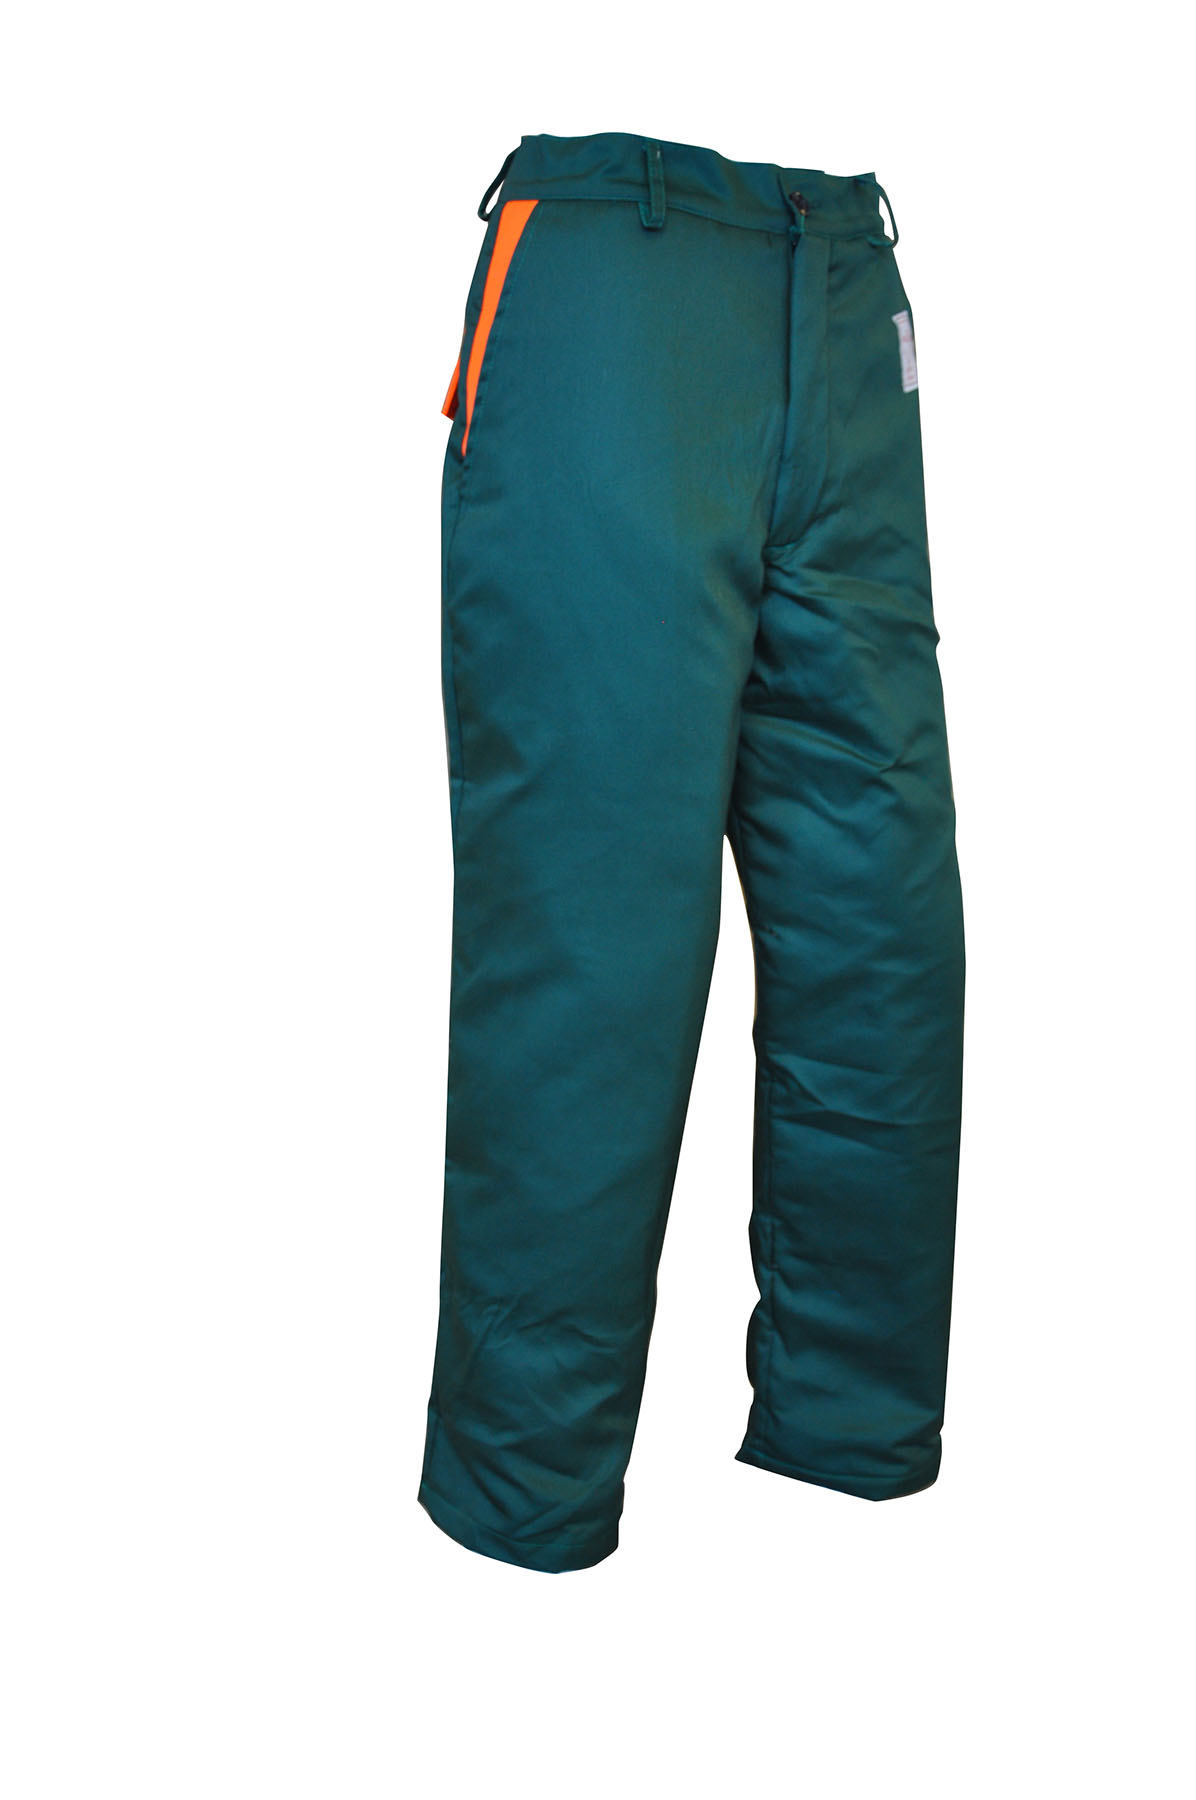 Pantaloni antitaglio per uso motosega EDIS - MARMOLADA colore  VERDE/ARANCIONE (fine serie)